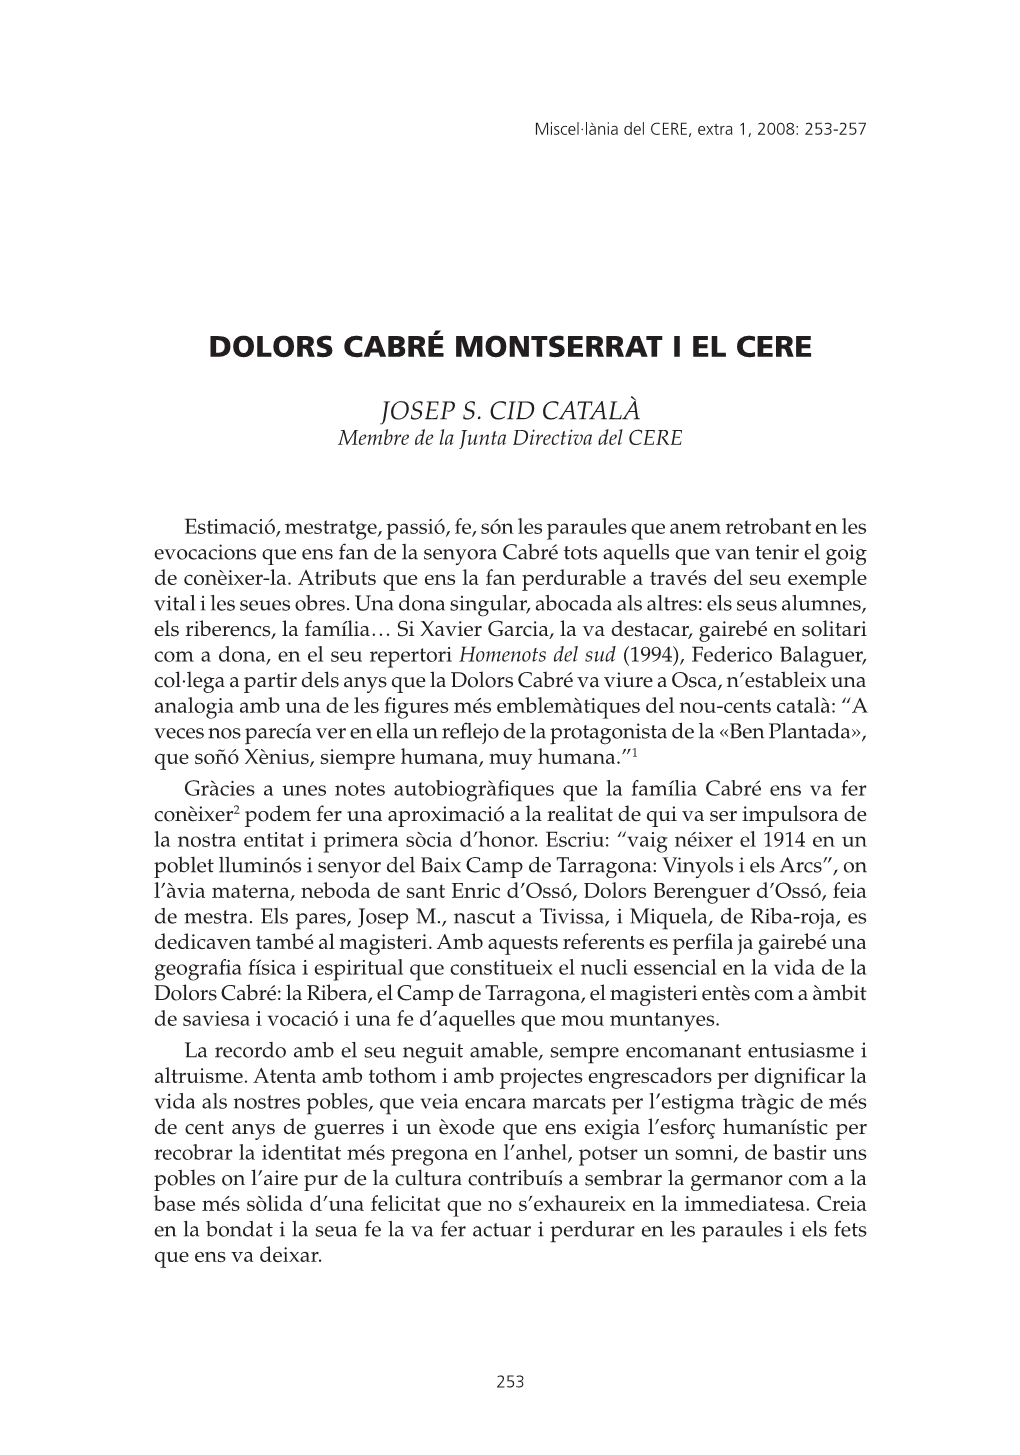 Dolors Cabré Montserrat I El Cere